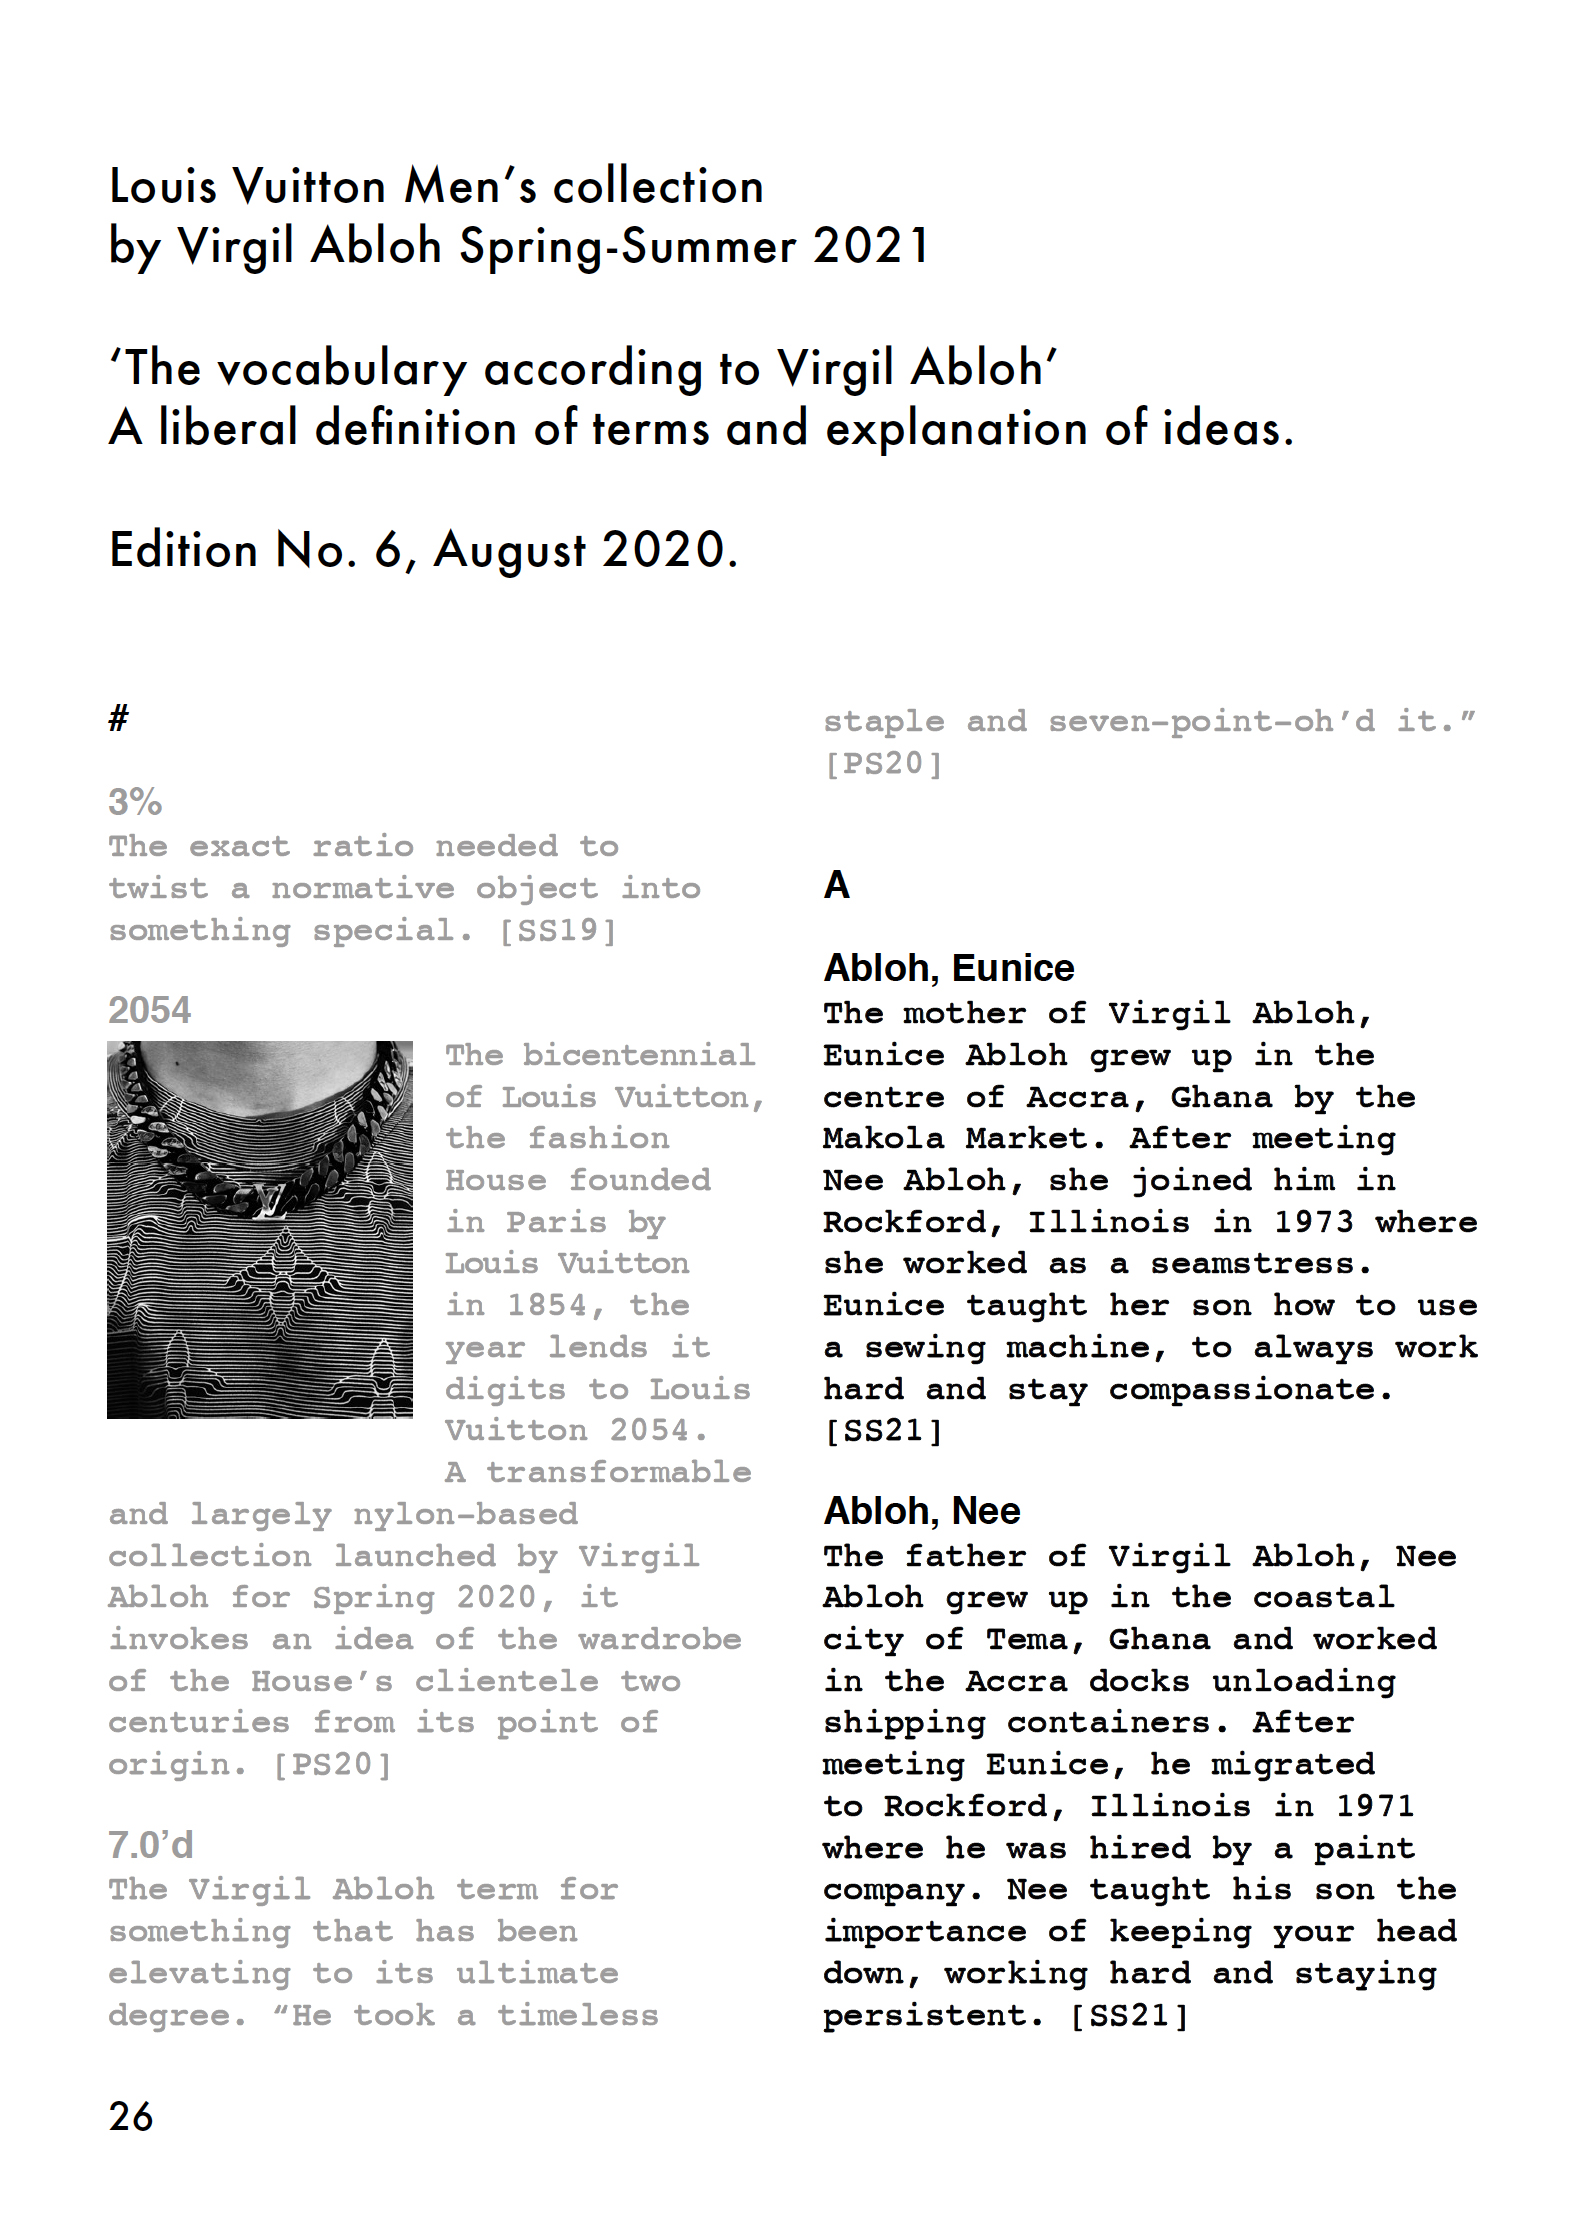 Virgil Abloh's Louis Vuitton Men's Show Notes Are Manifesto